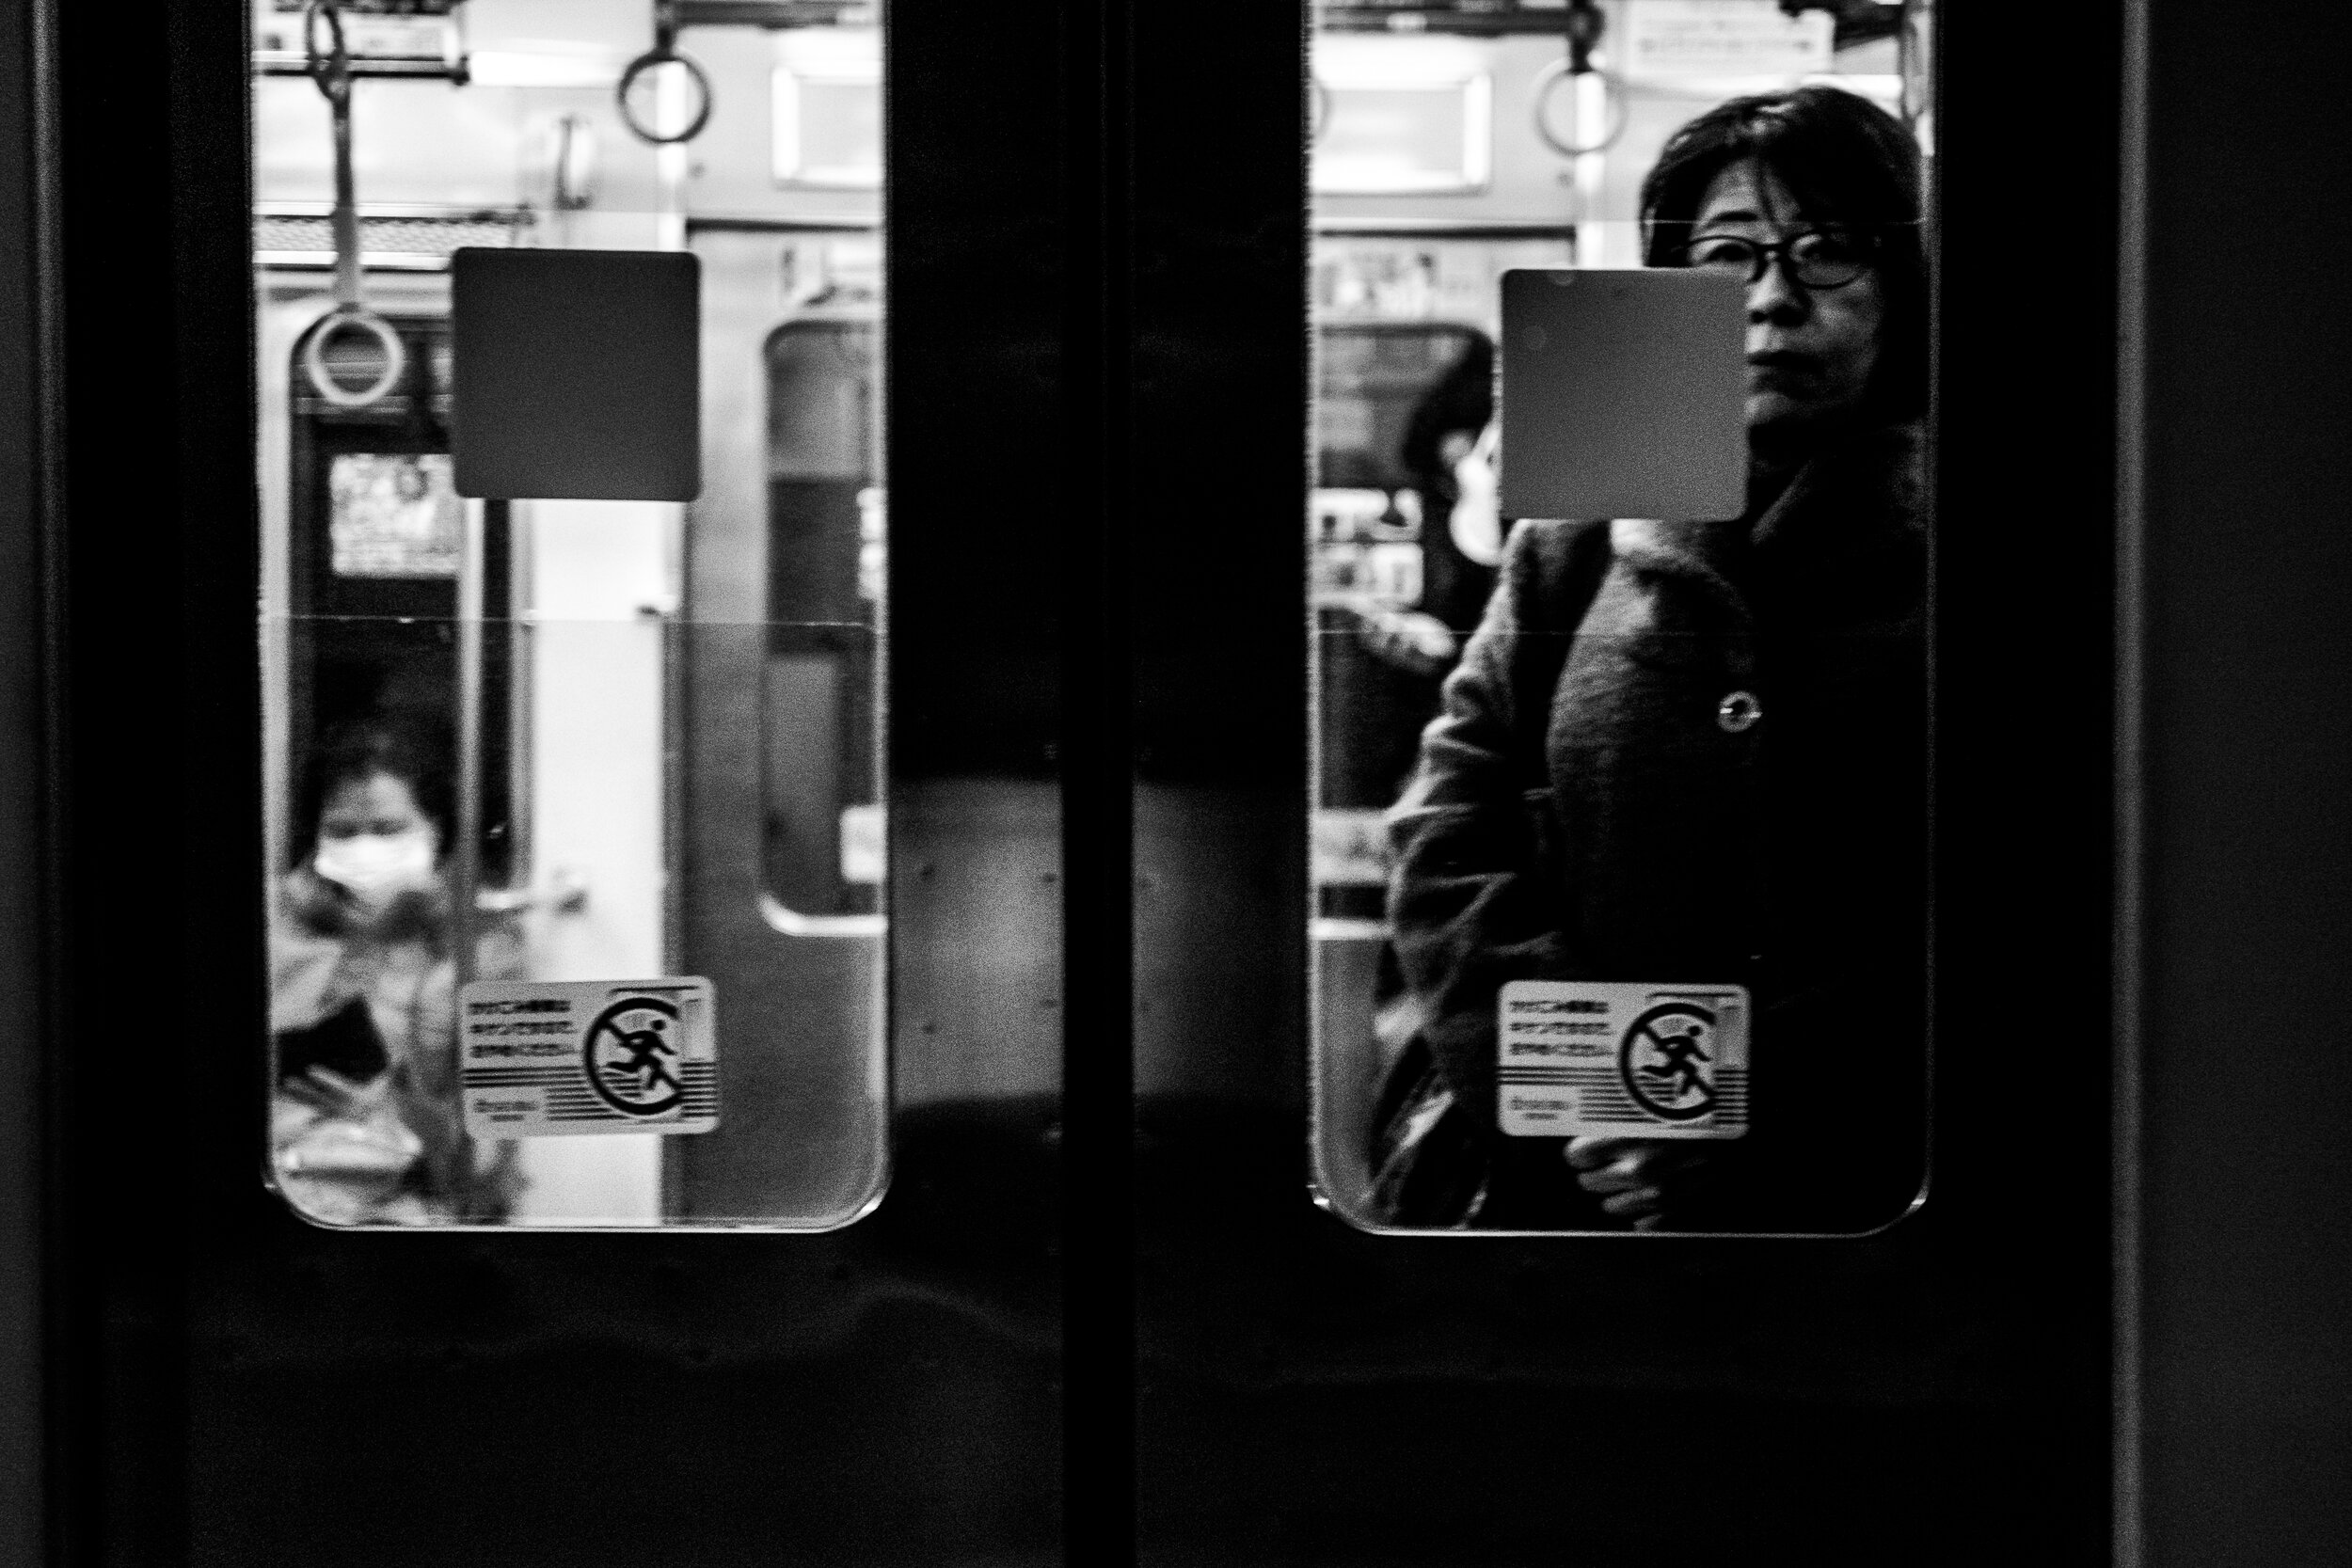 Dona mirant a l'exterior des del metro, en blanc i negre.